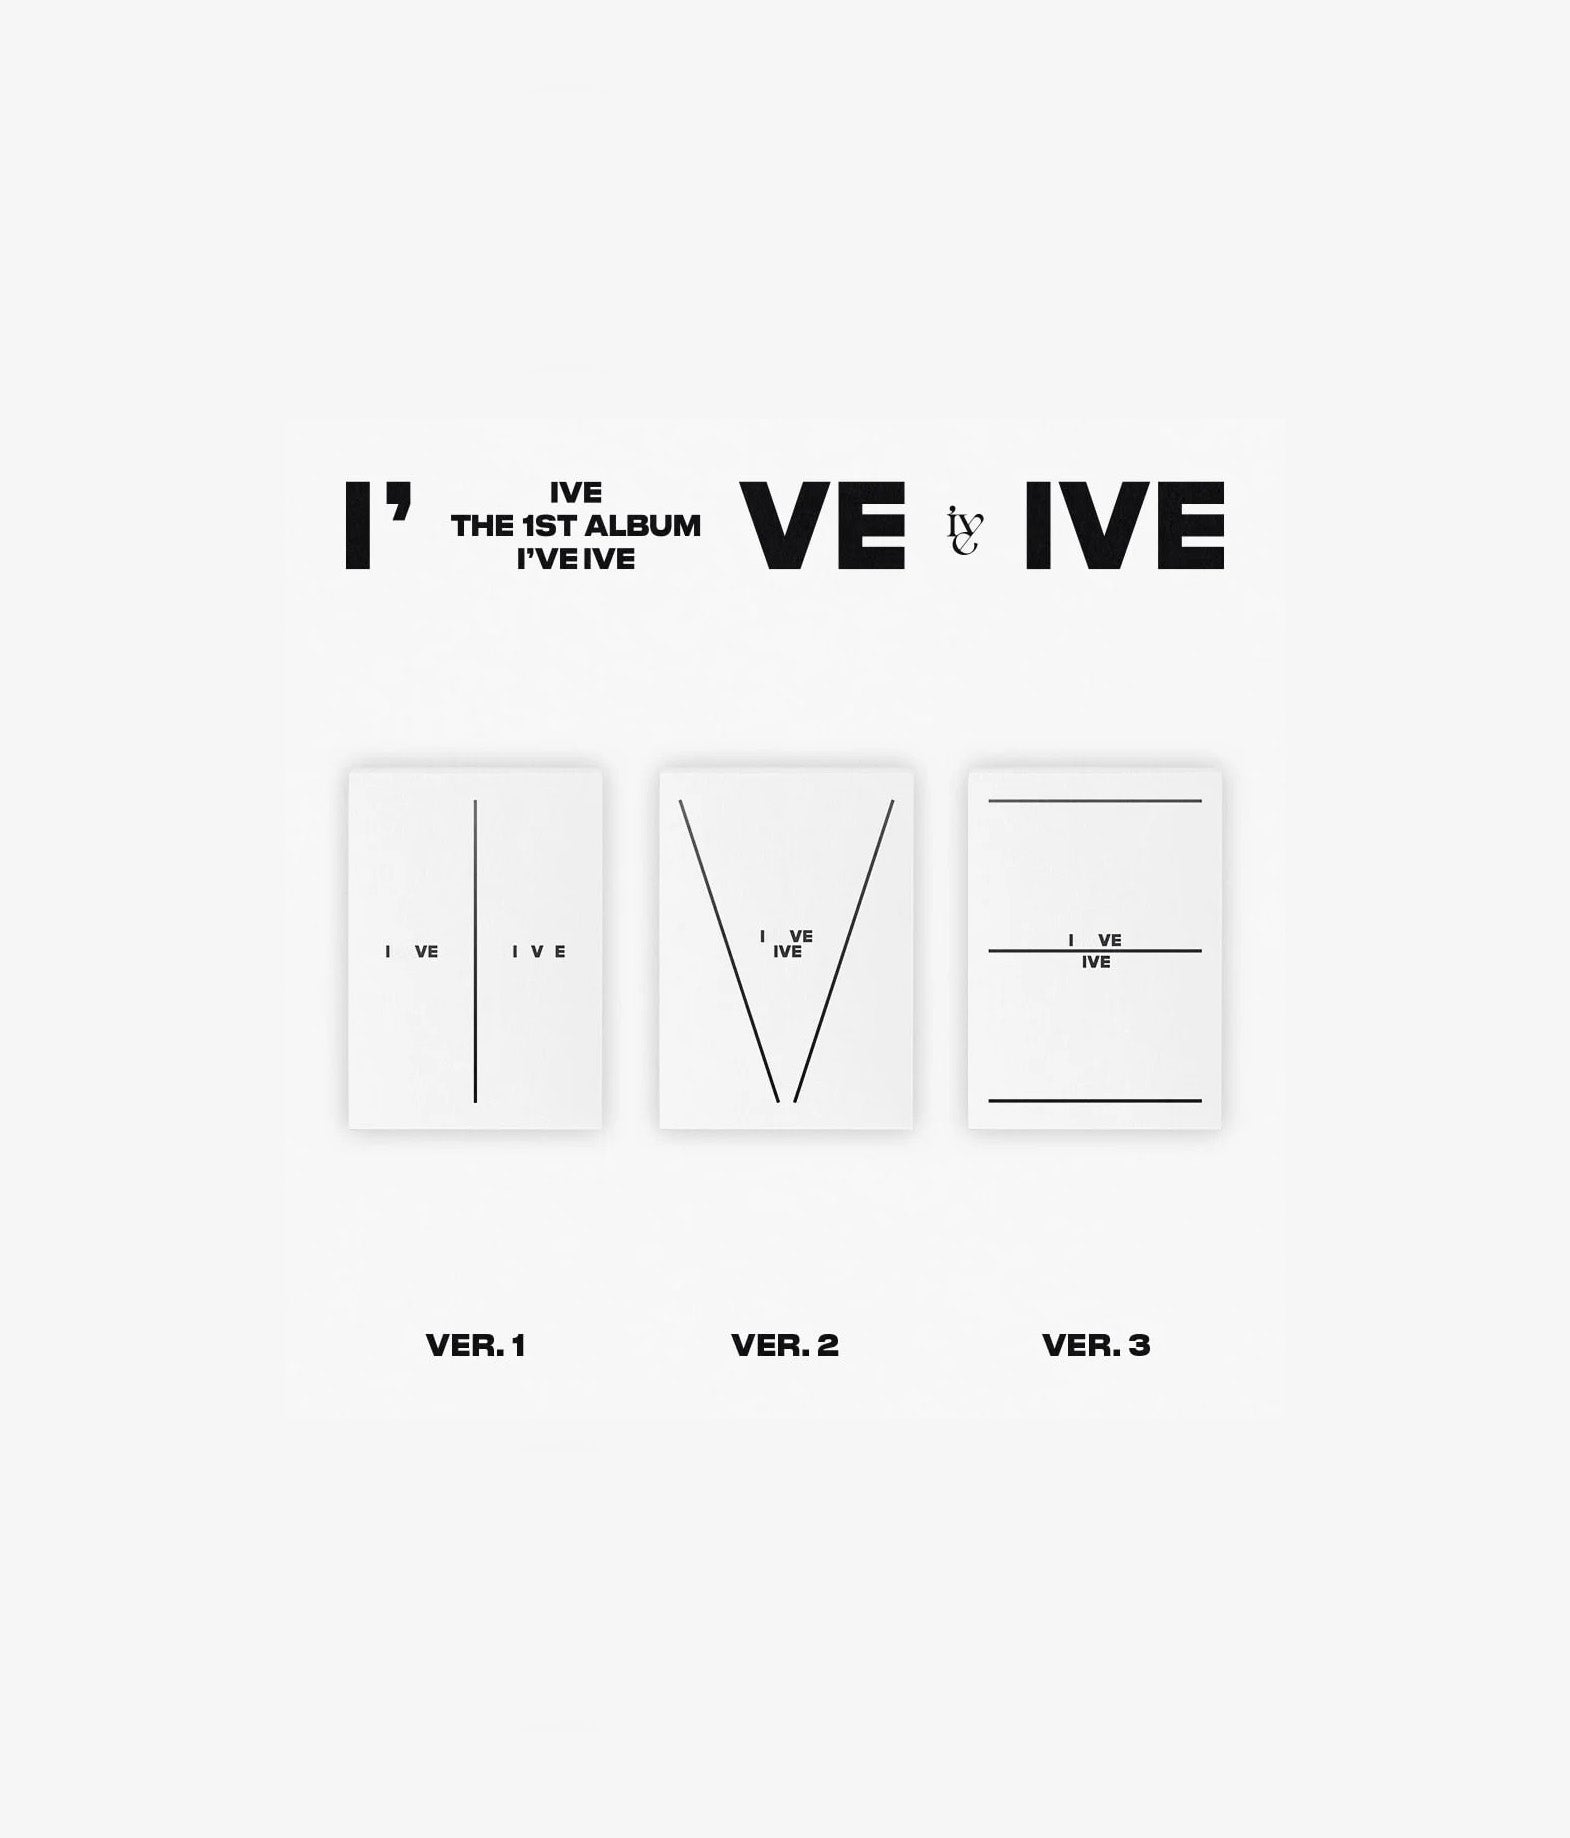 IVE - I've IVE